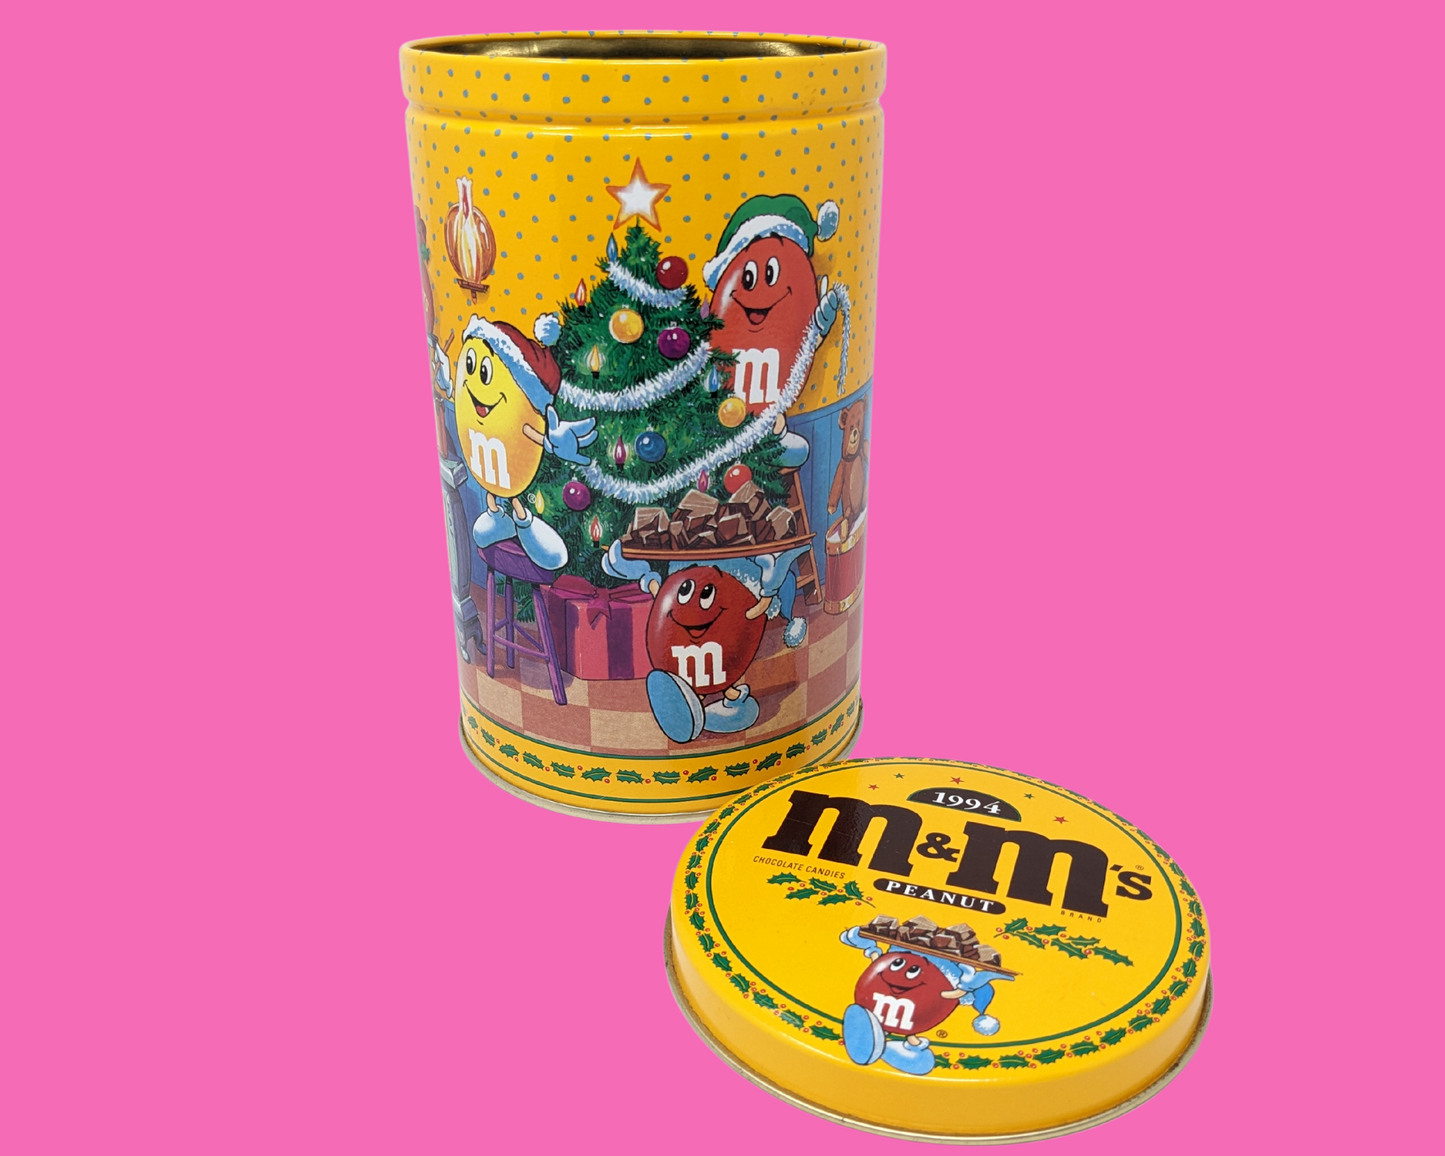 Vintage 1994 Peanut M&M's Chocolate, Christmas, Tin Box